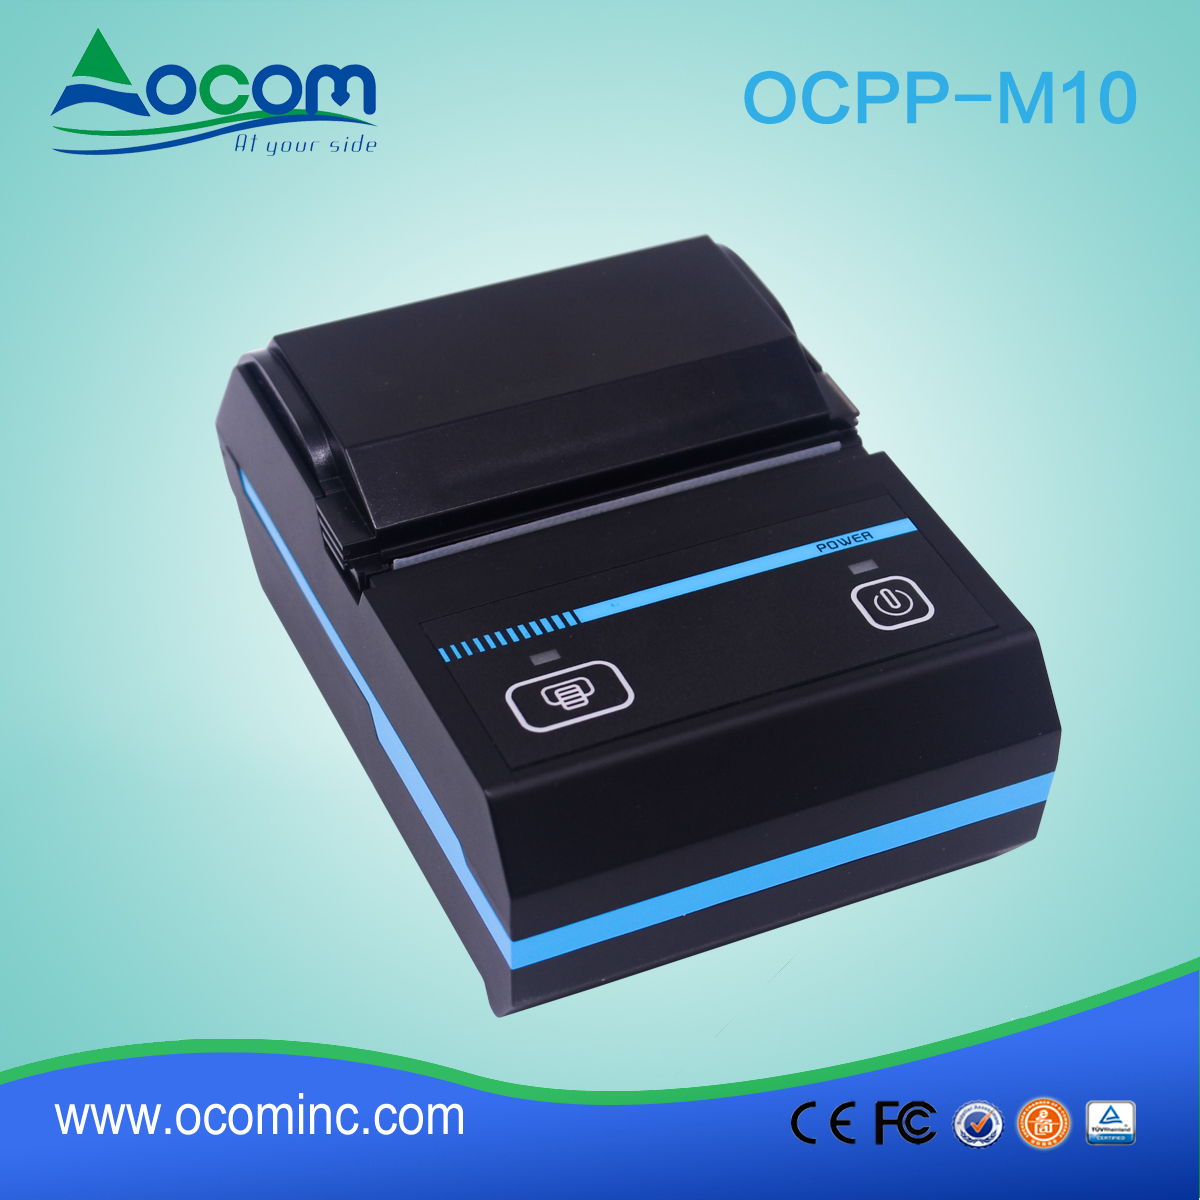 (OCPP -M10) Stampante termica portatile Bluetooth per ricevute ricevute 58mm